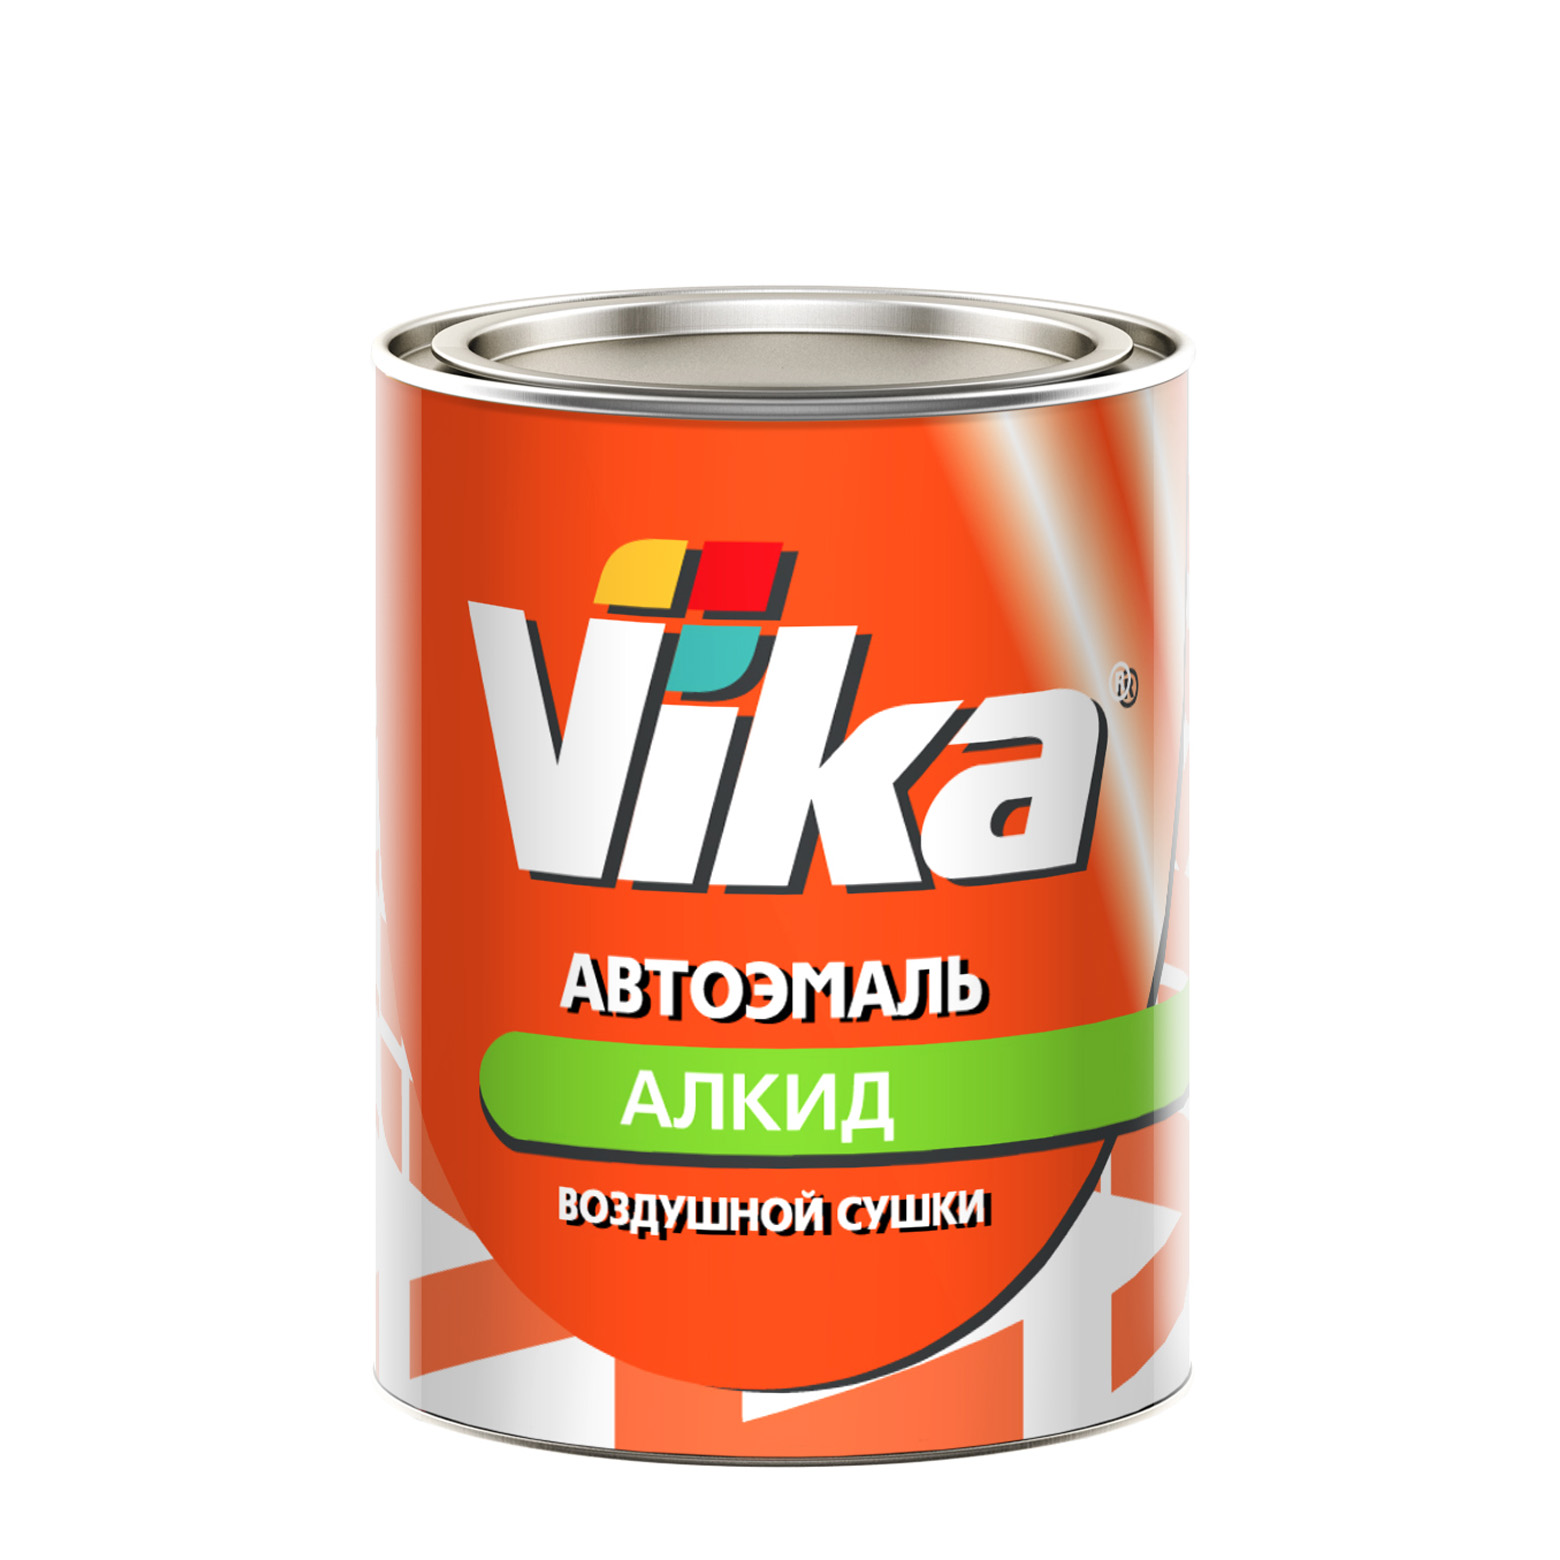 Фото 1 - Автоэмаль Vika-60, цвет 140 Яшма алкидная глянцевая естественной сушки - 0,8 кг.